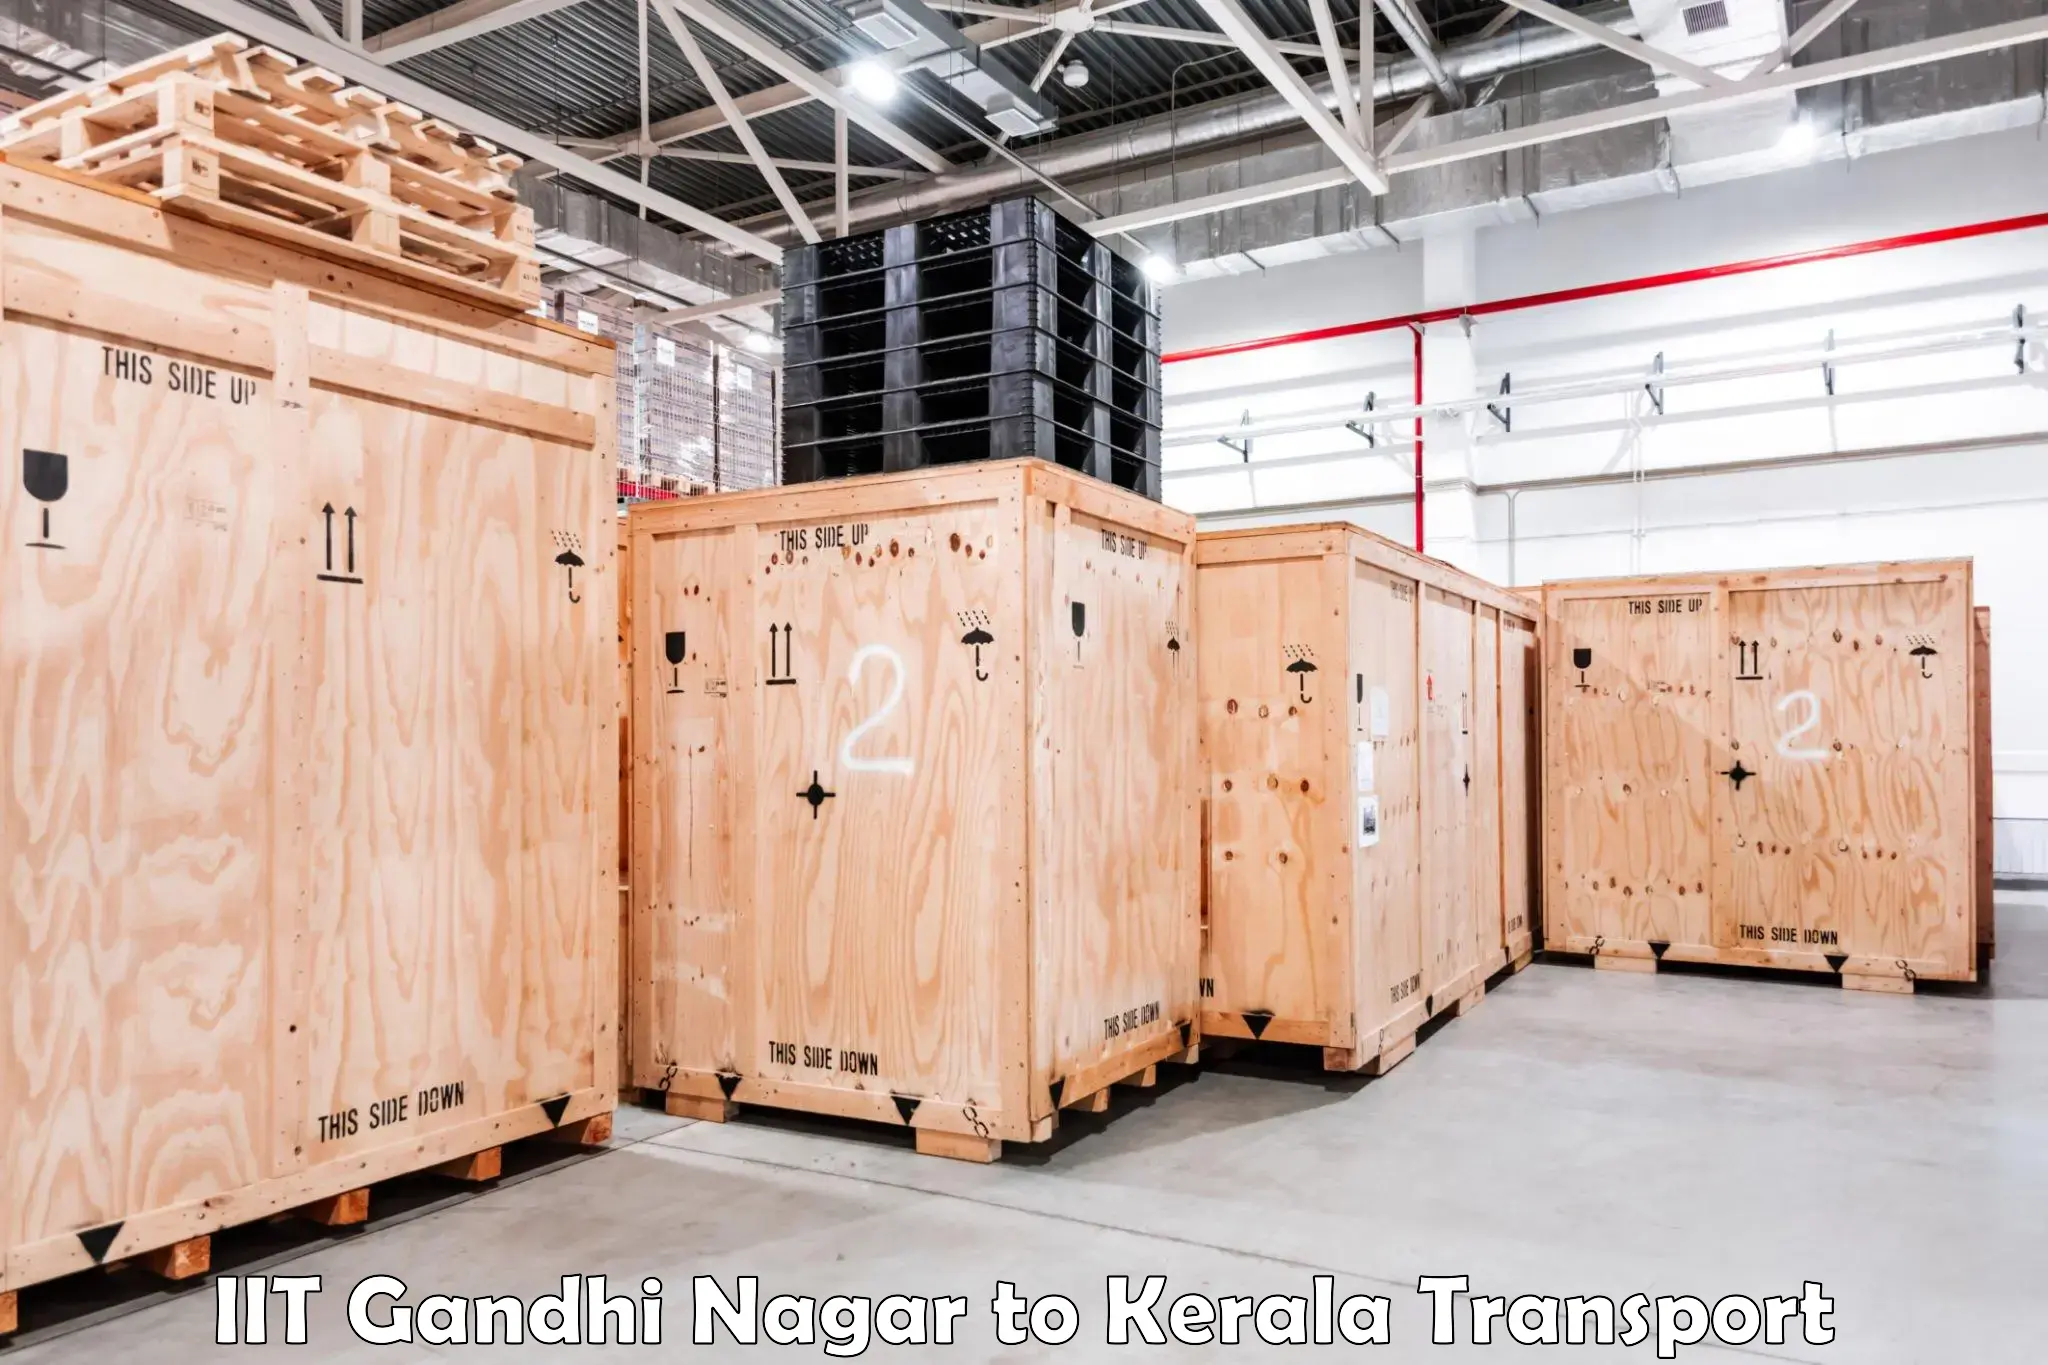 Container transport service IIT Gandhi Nagar to Kuchi